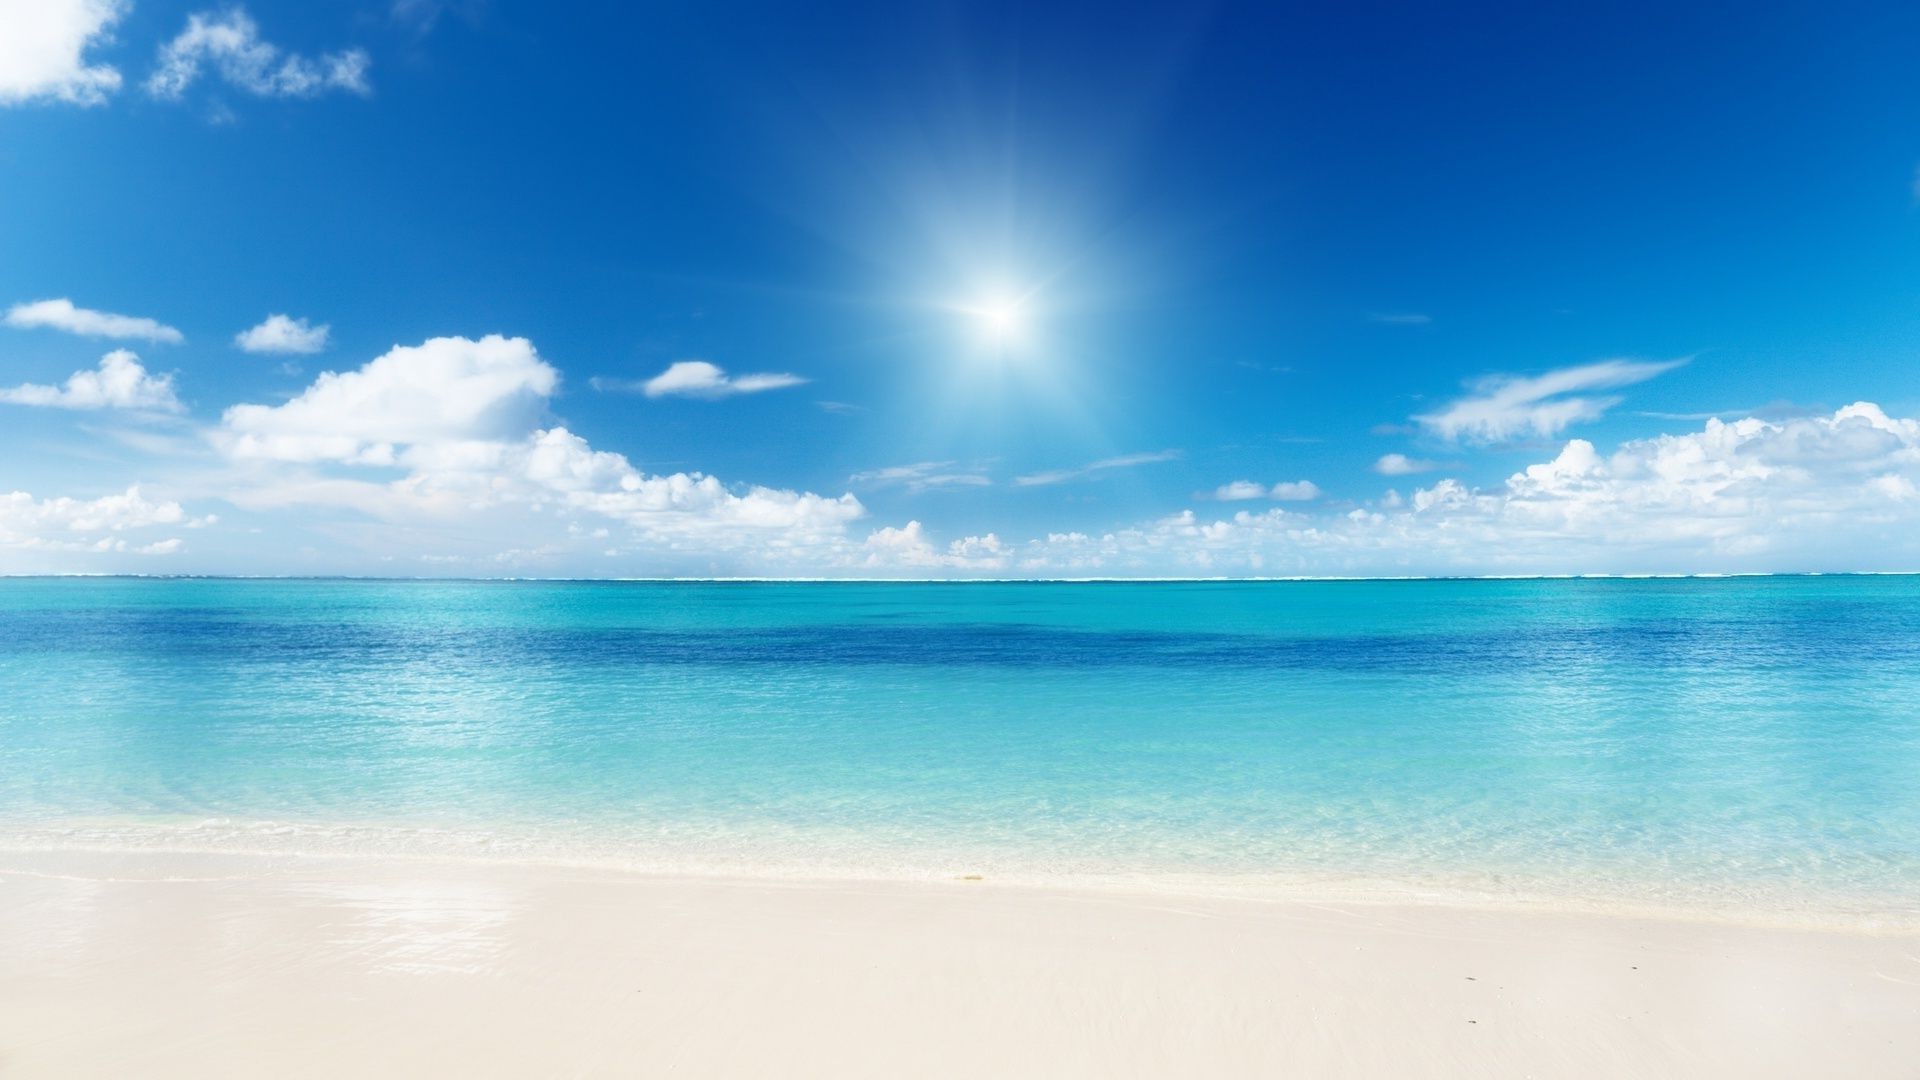 море и океан лето песок солнце хорошую погоду воды тропический природа пляж прибой идиллия небо бирюза путешествия небо хладнокровие